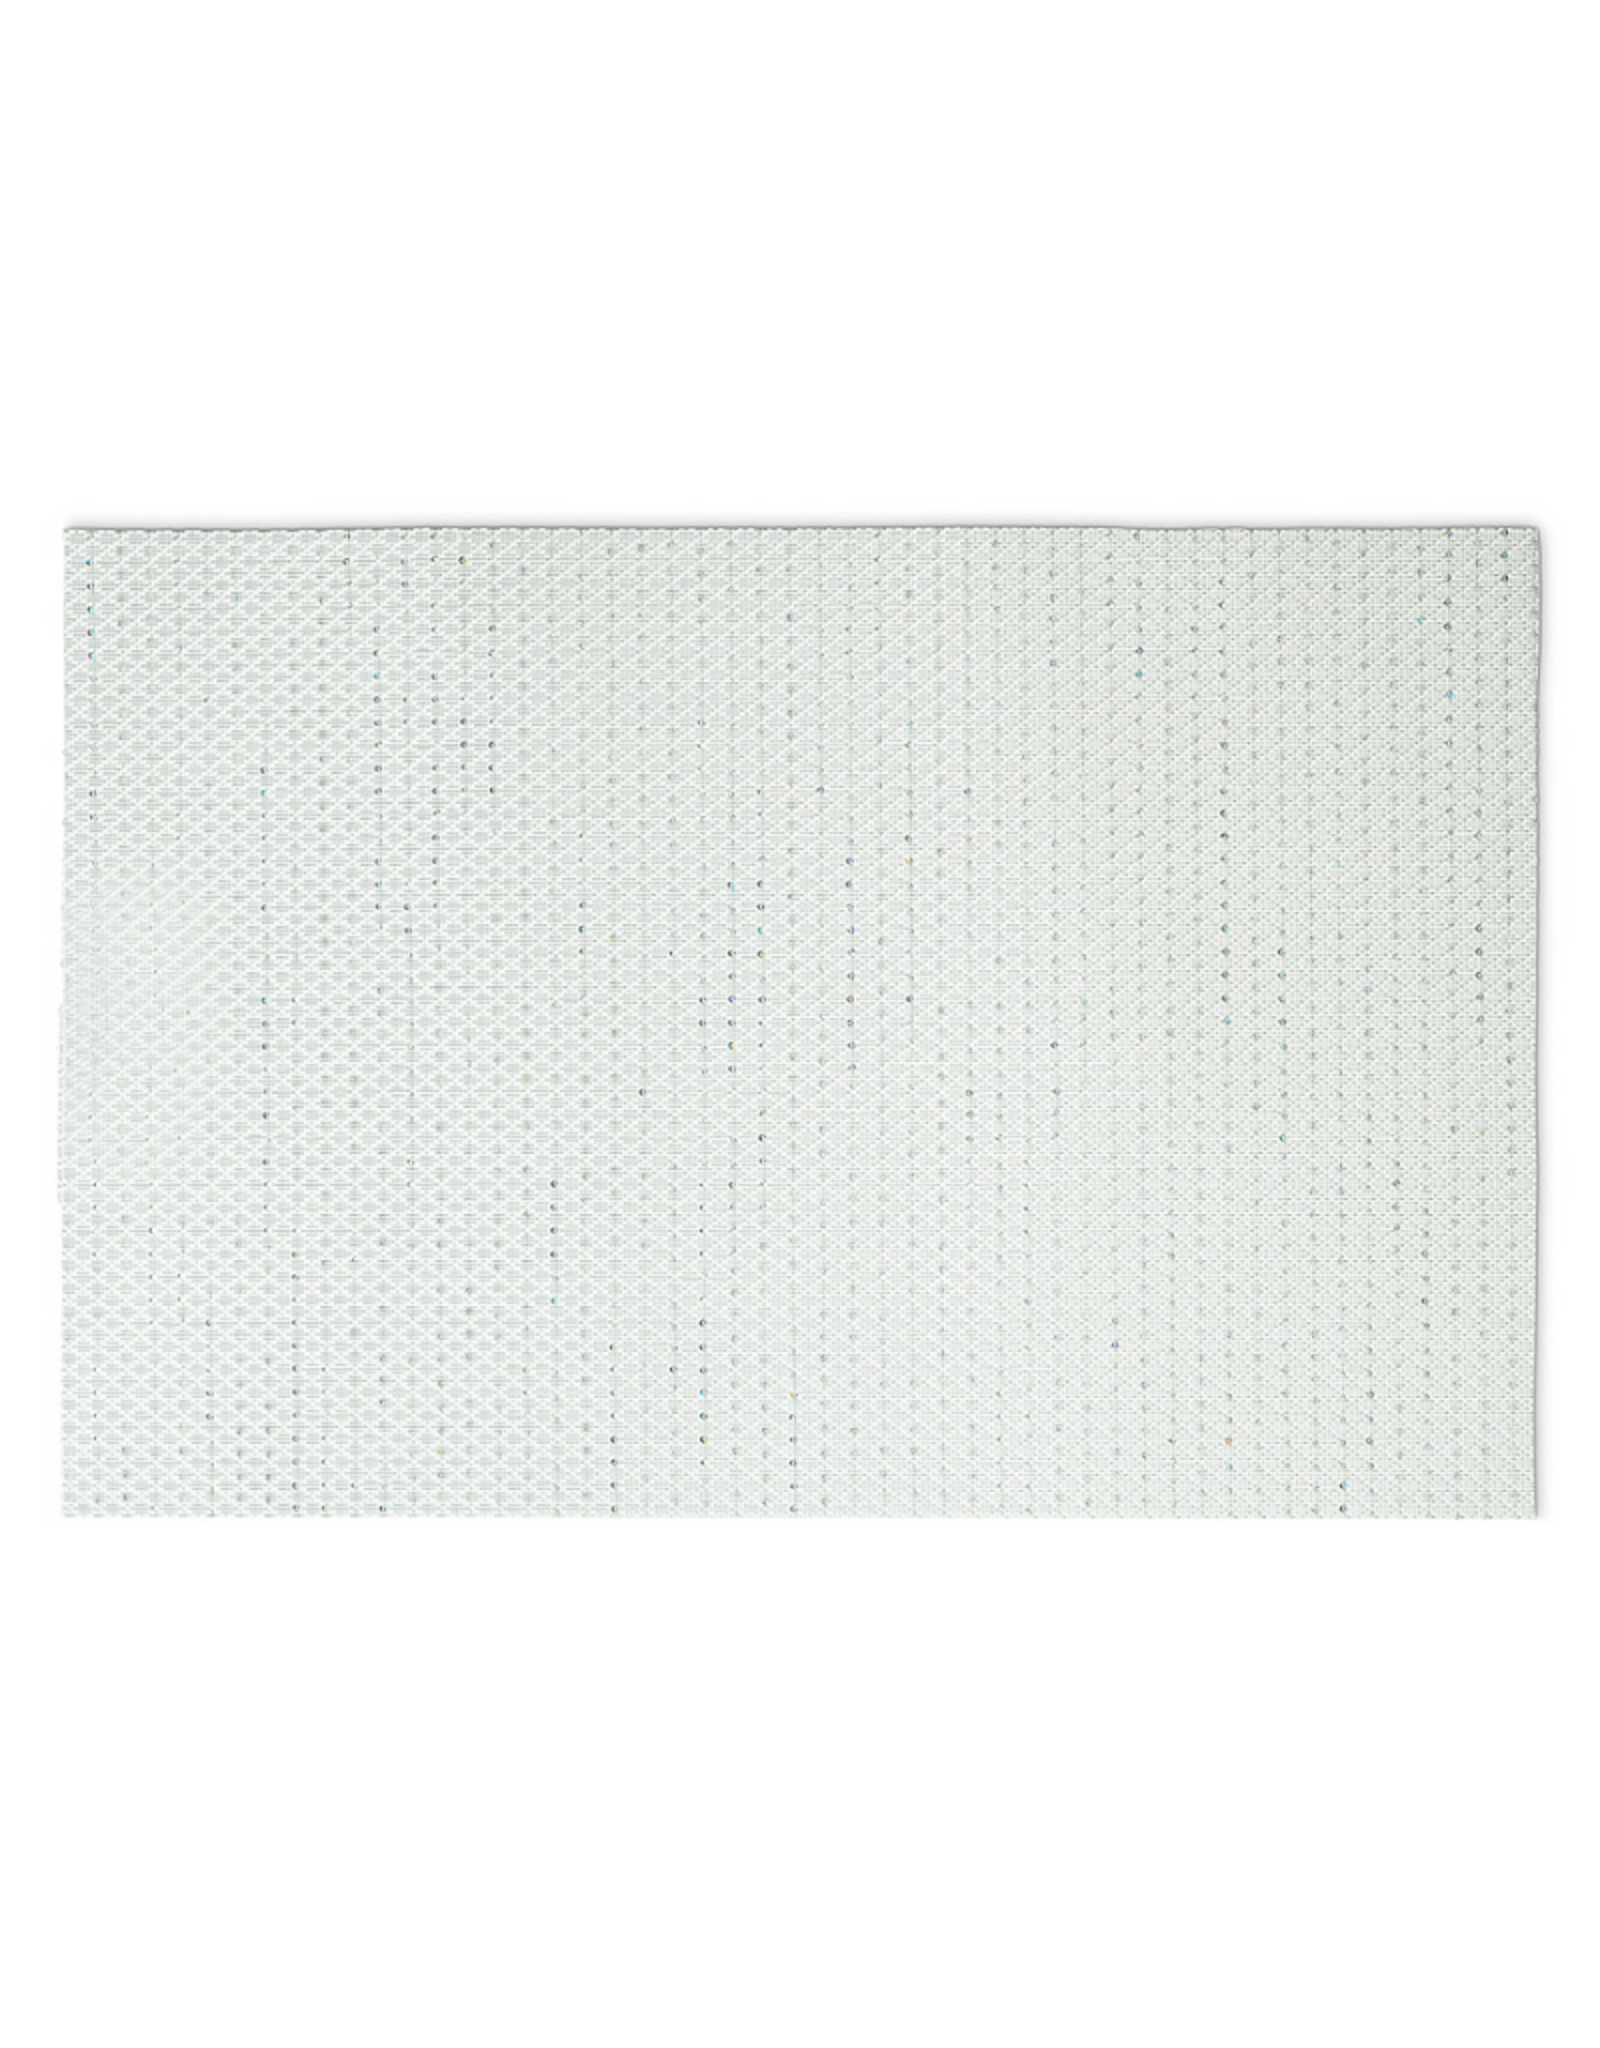 Abbott Napperon 12 x 18" blanc avec paillettes